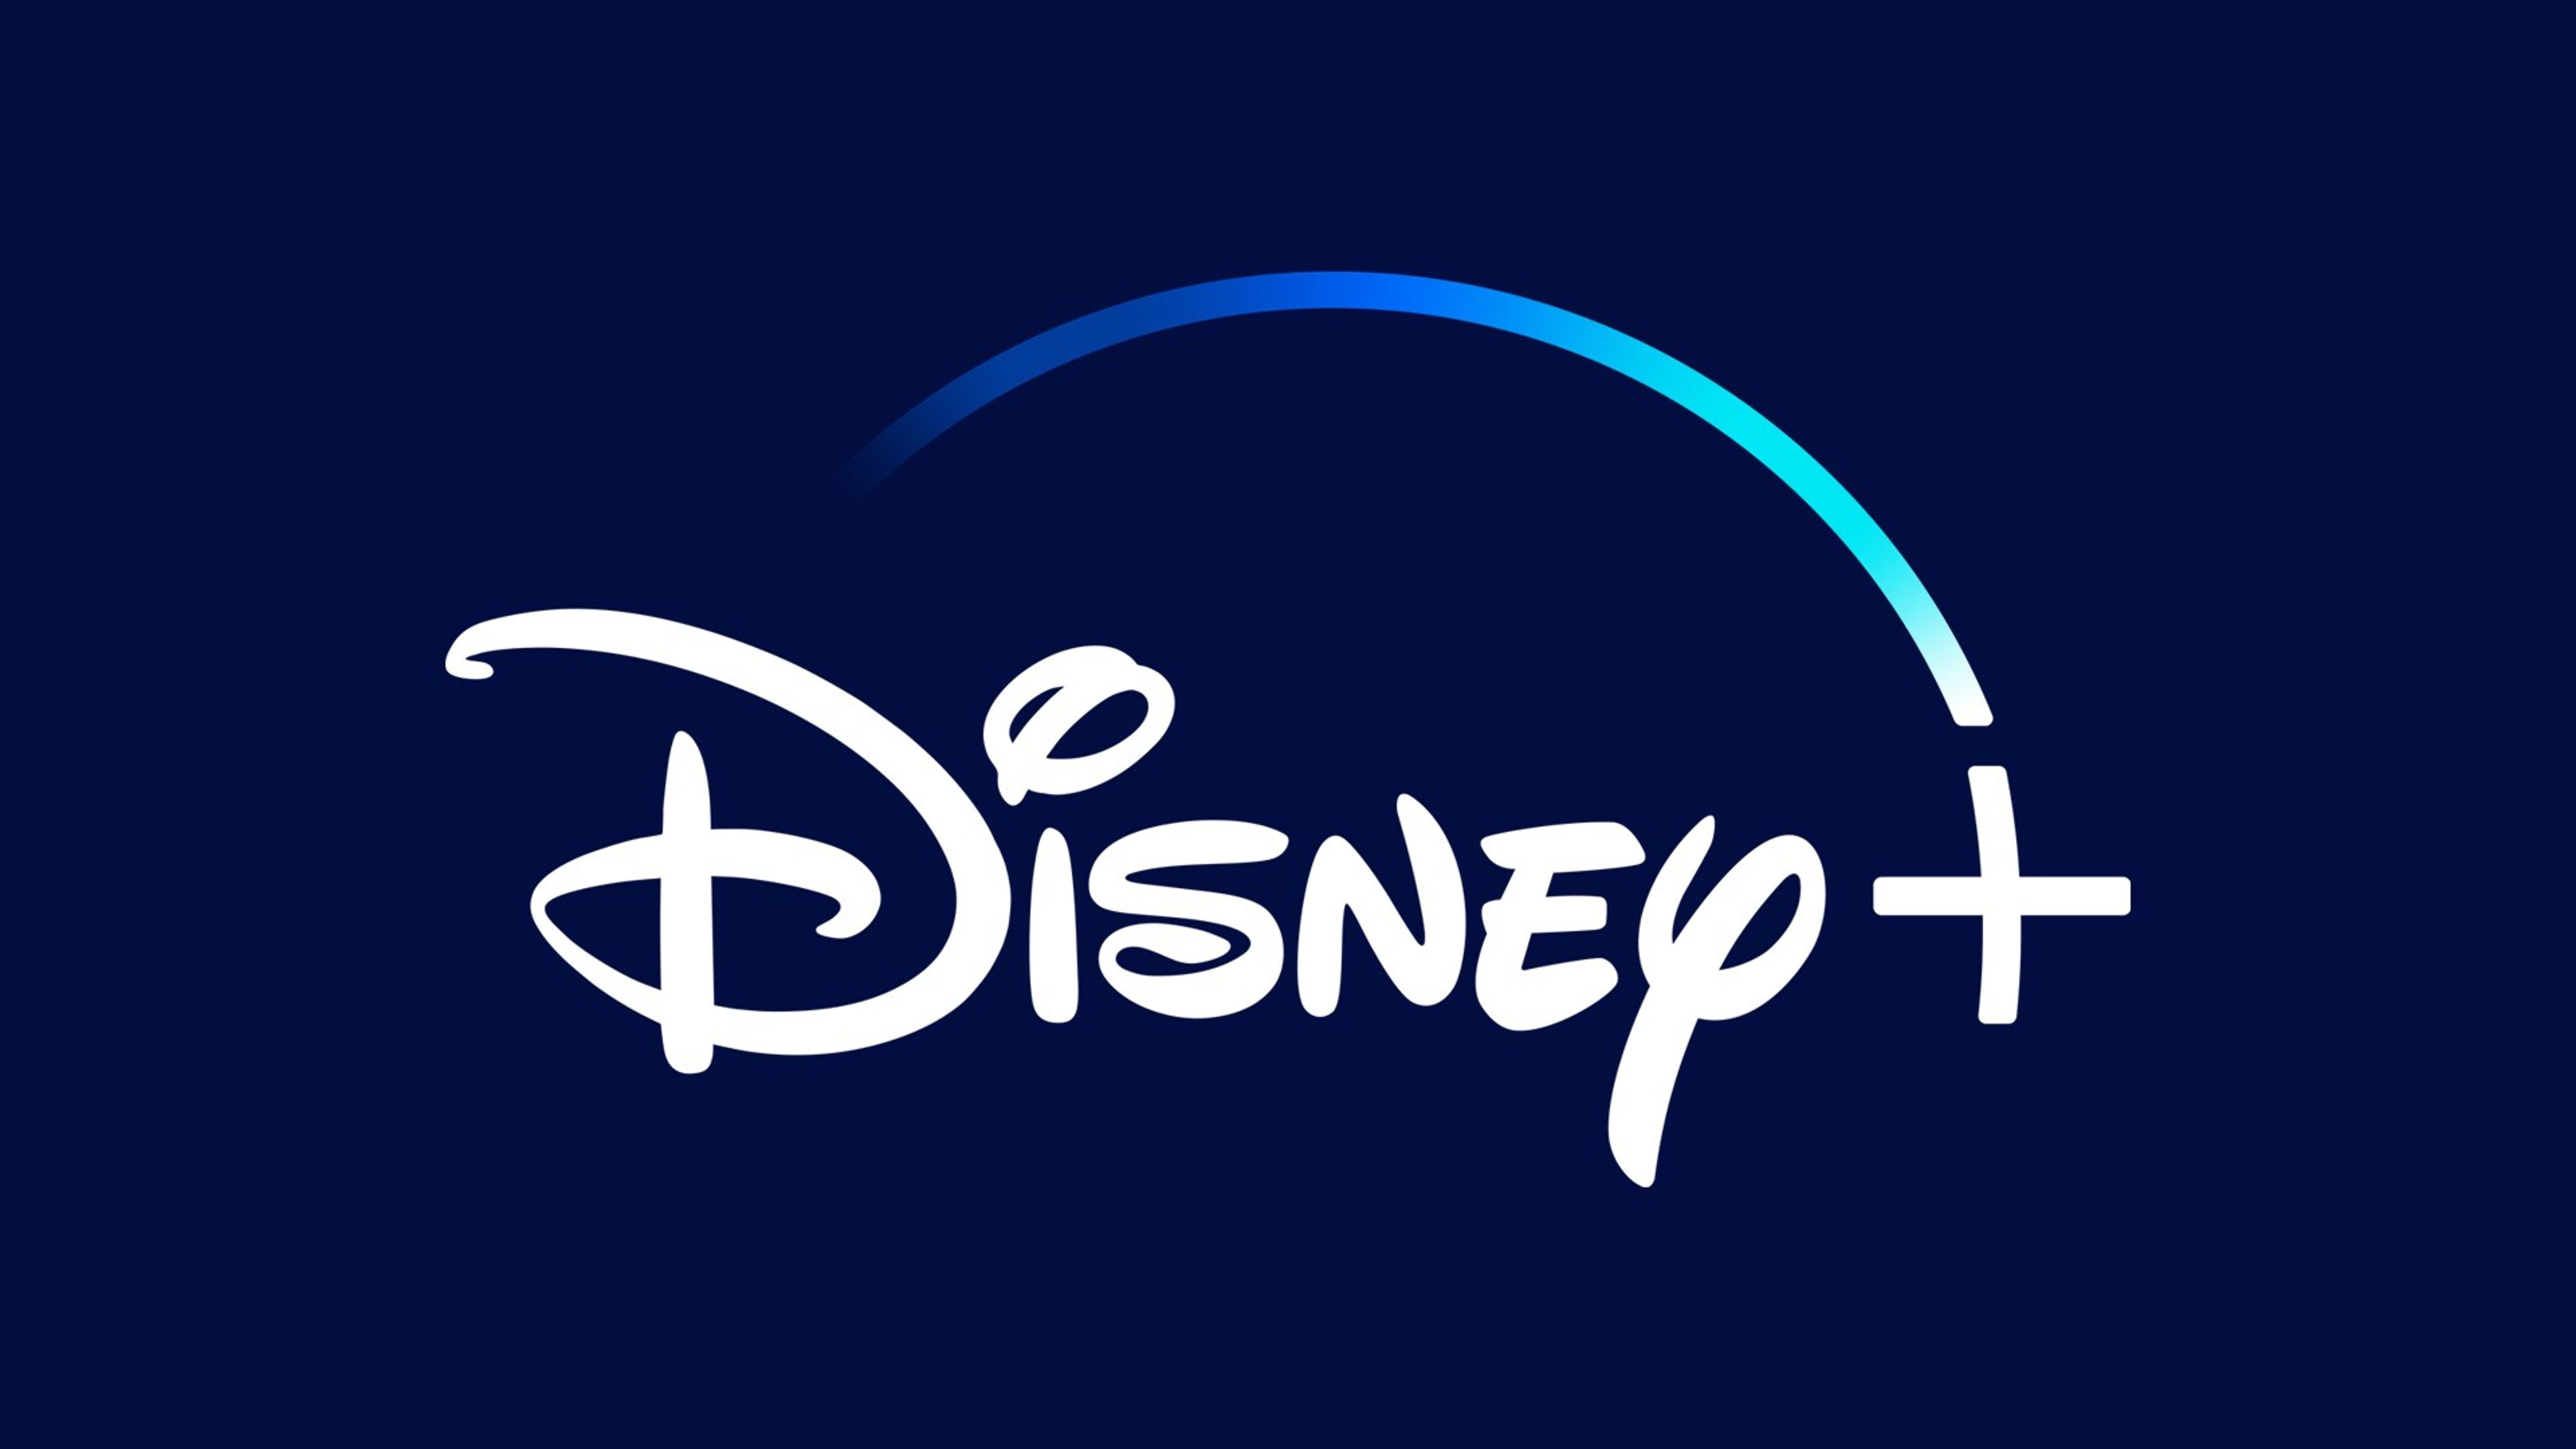 Disney+ in offerta: attiva la promo da 1,99 al mese per tre mesi